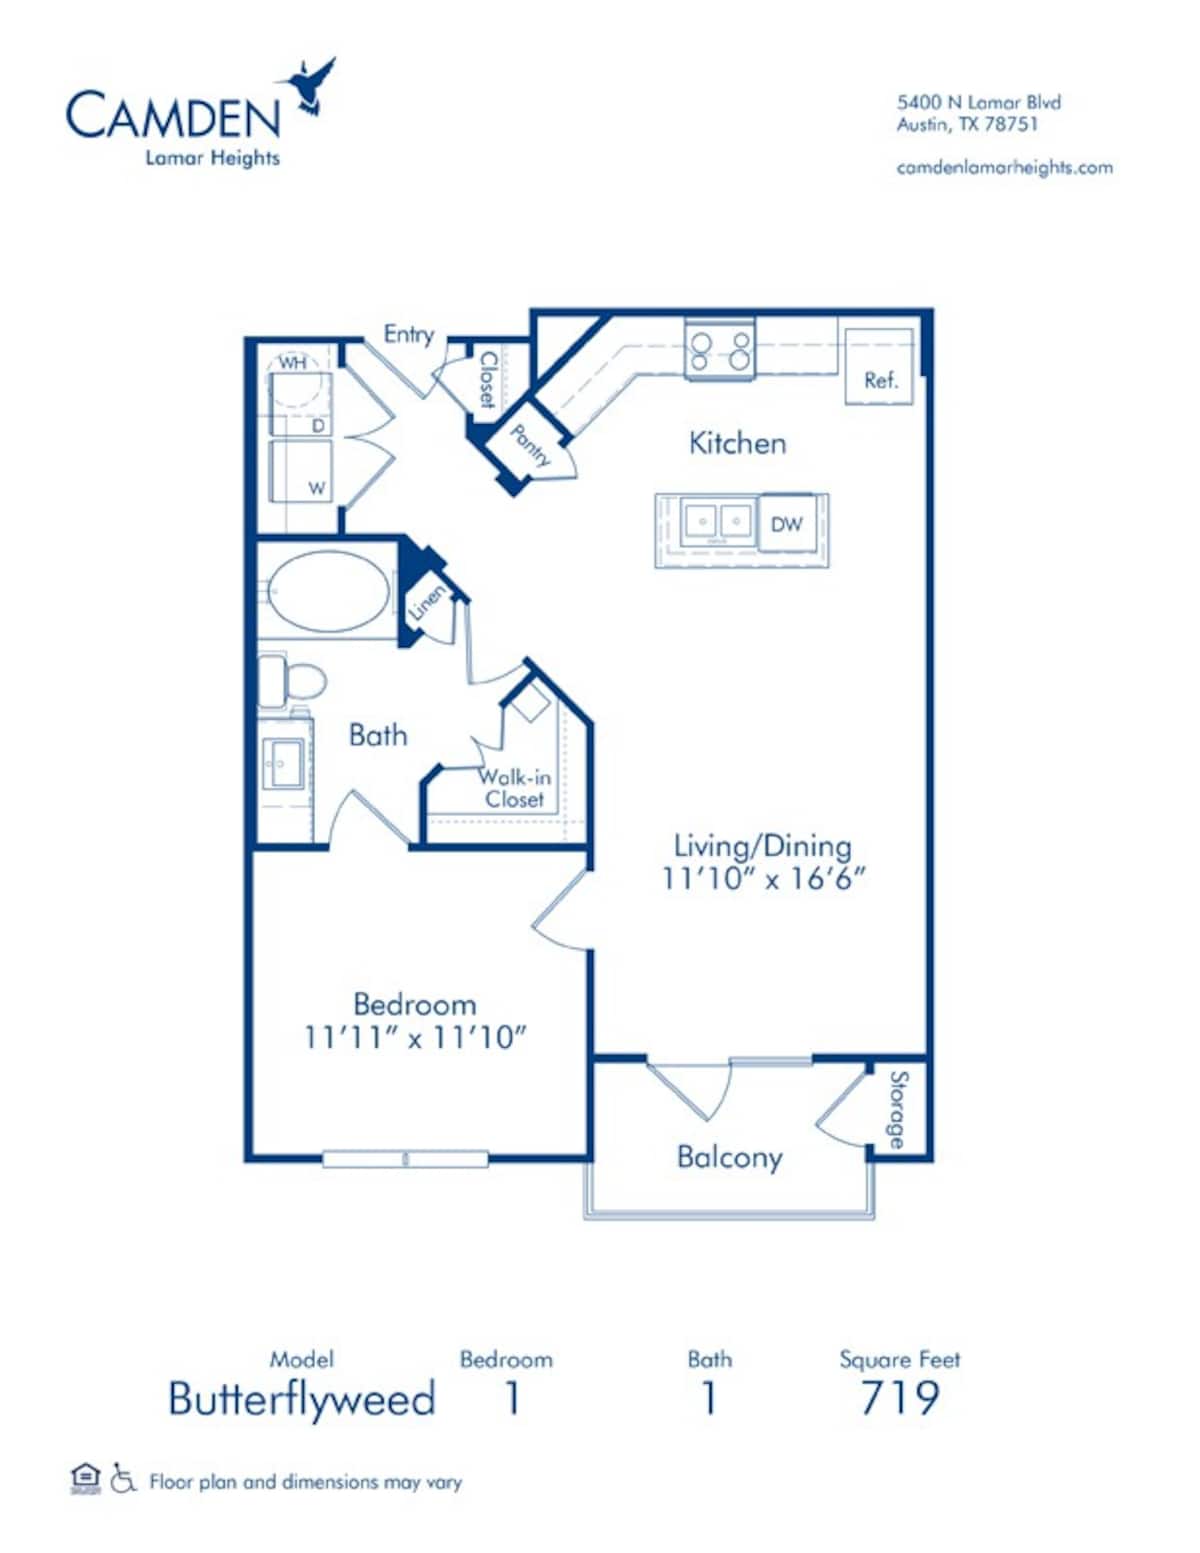 Floorplan diagram for Butterflyweed, showing 1 bedroom